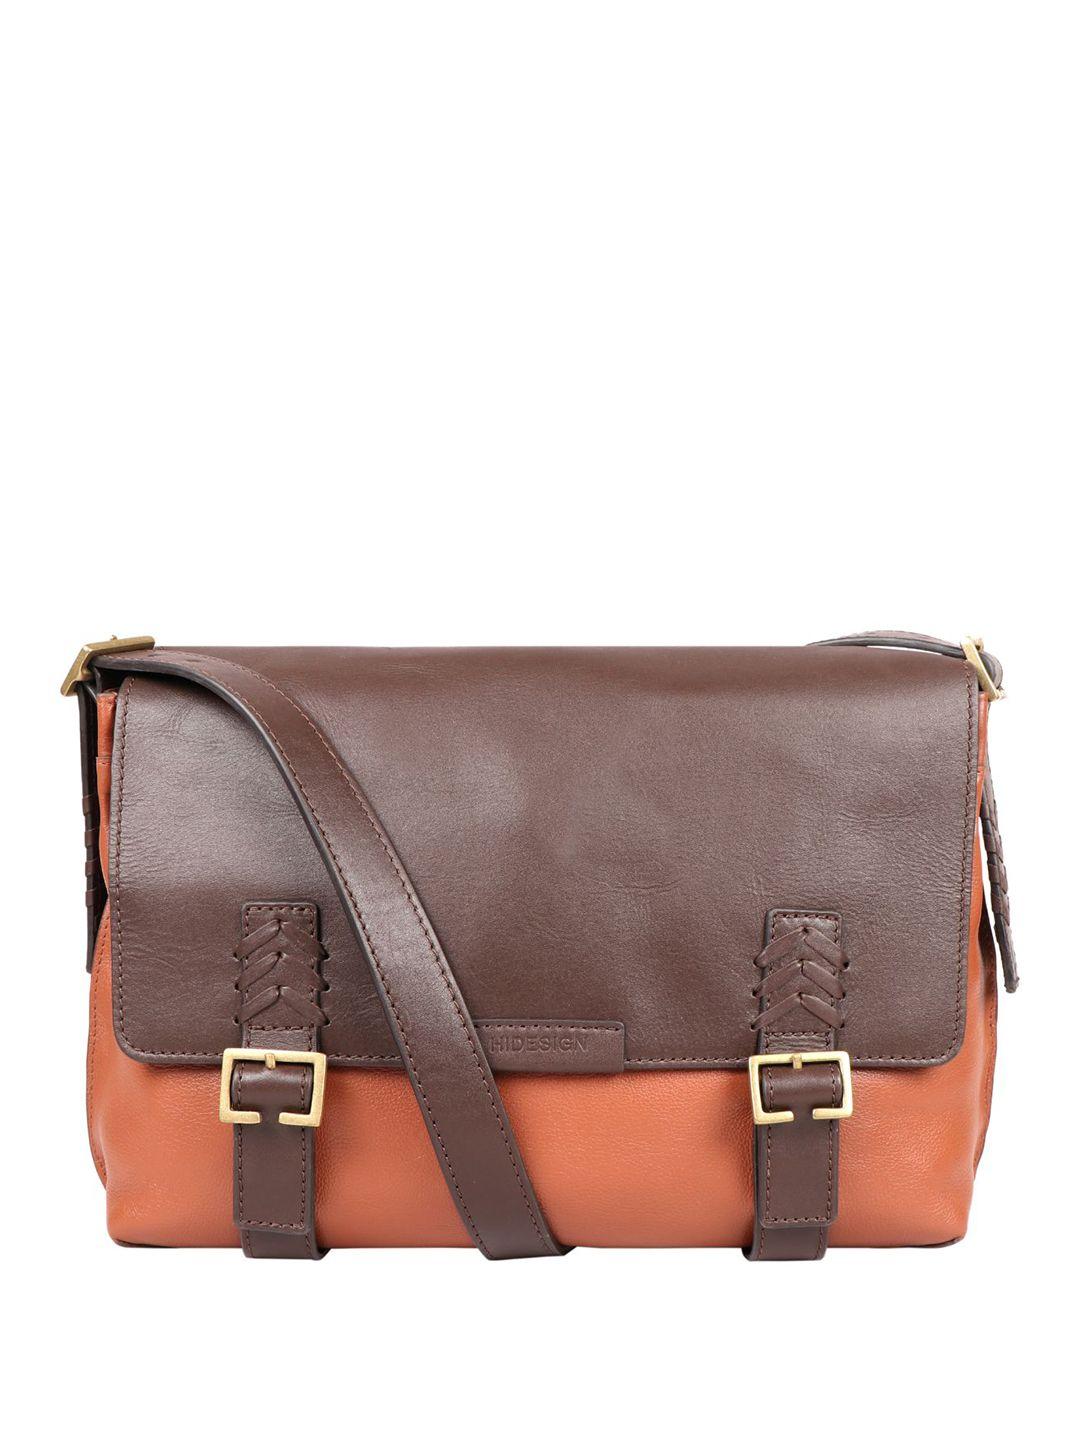 hidesign leather messenger bag